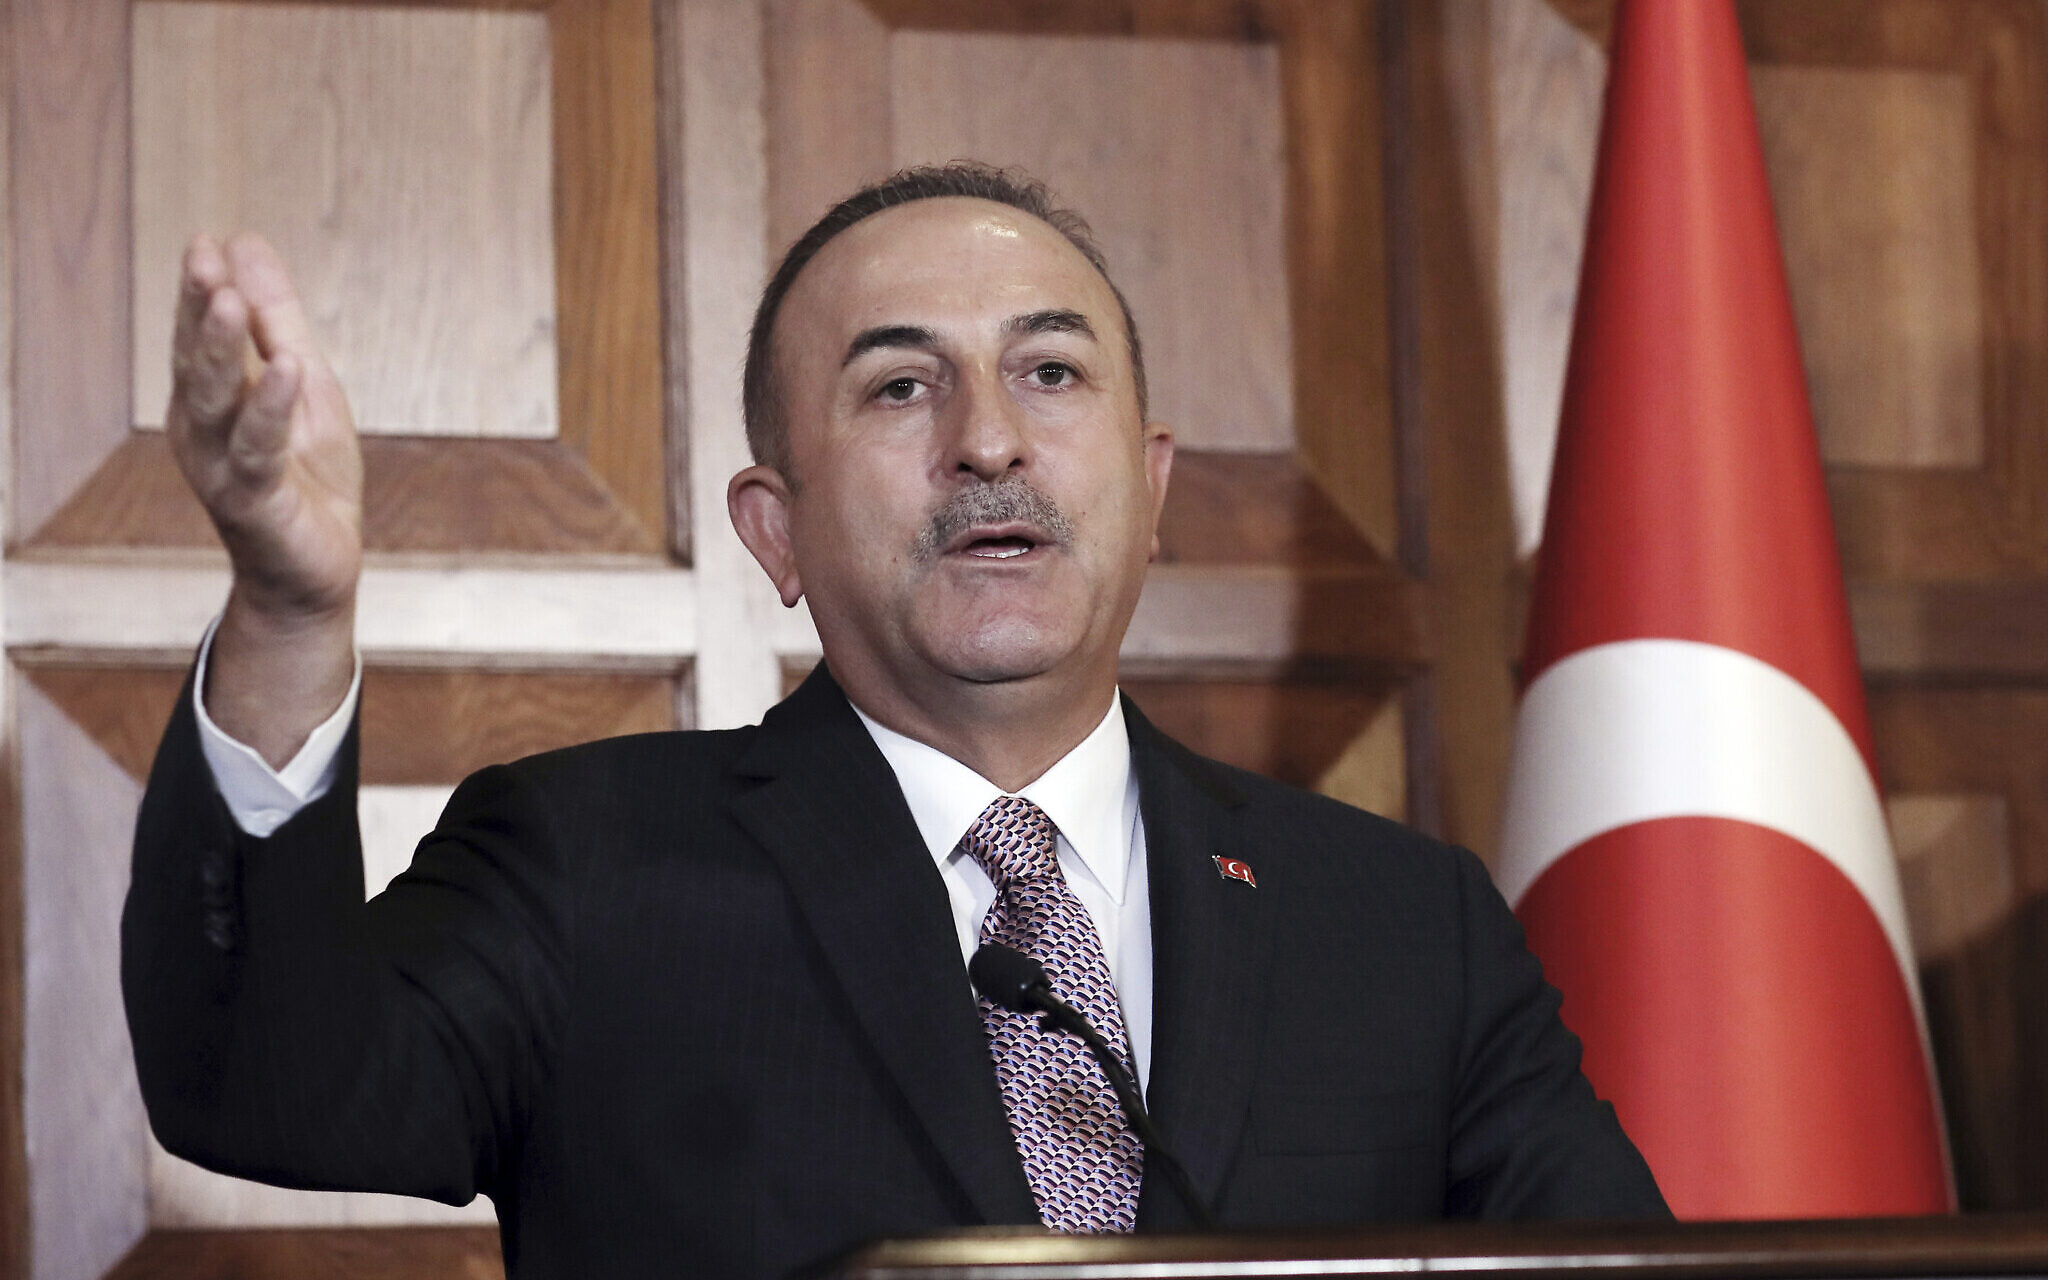 Mevlut Cavusoglu, ministrul de externe turc, sursă foto Times of Israel AP